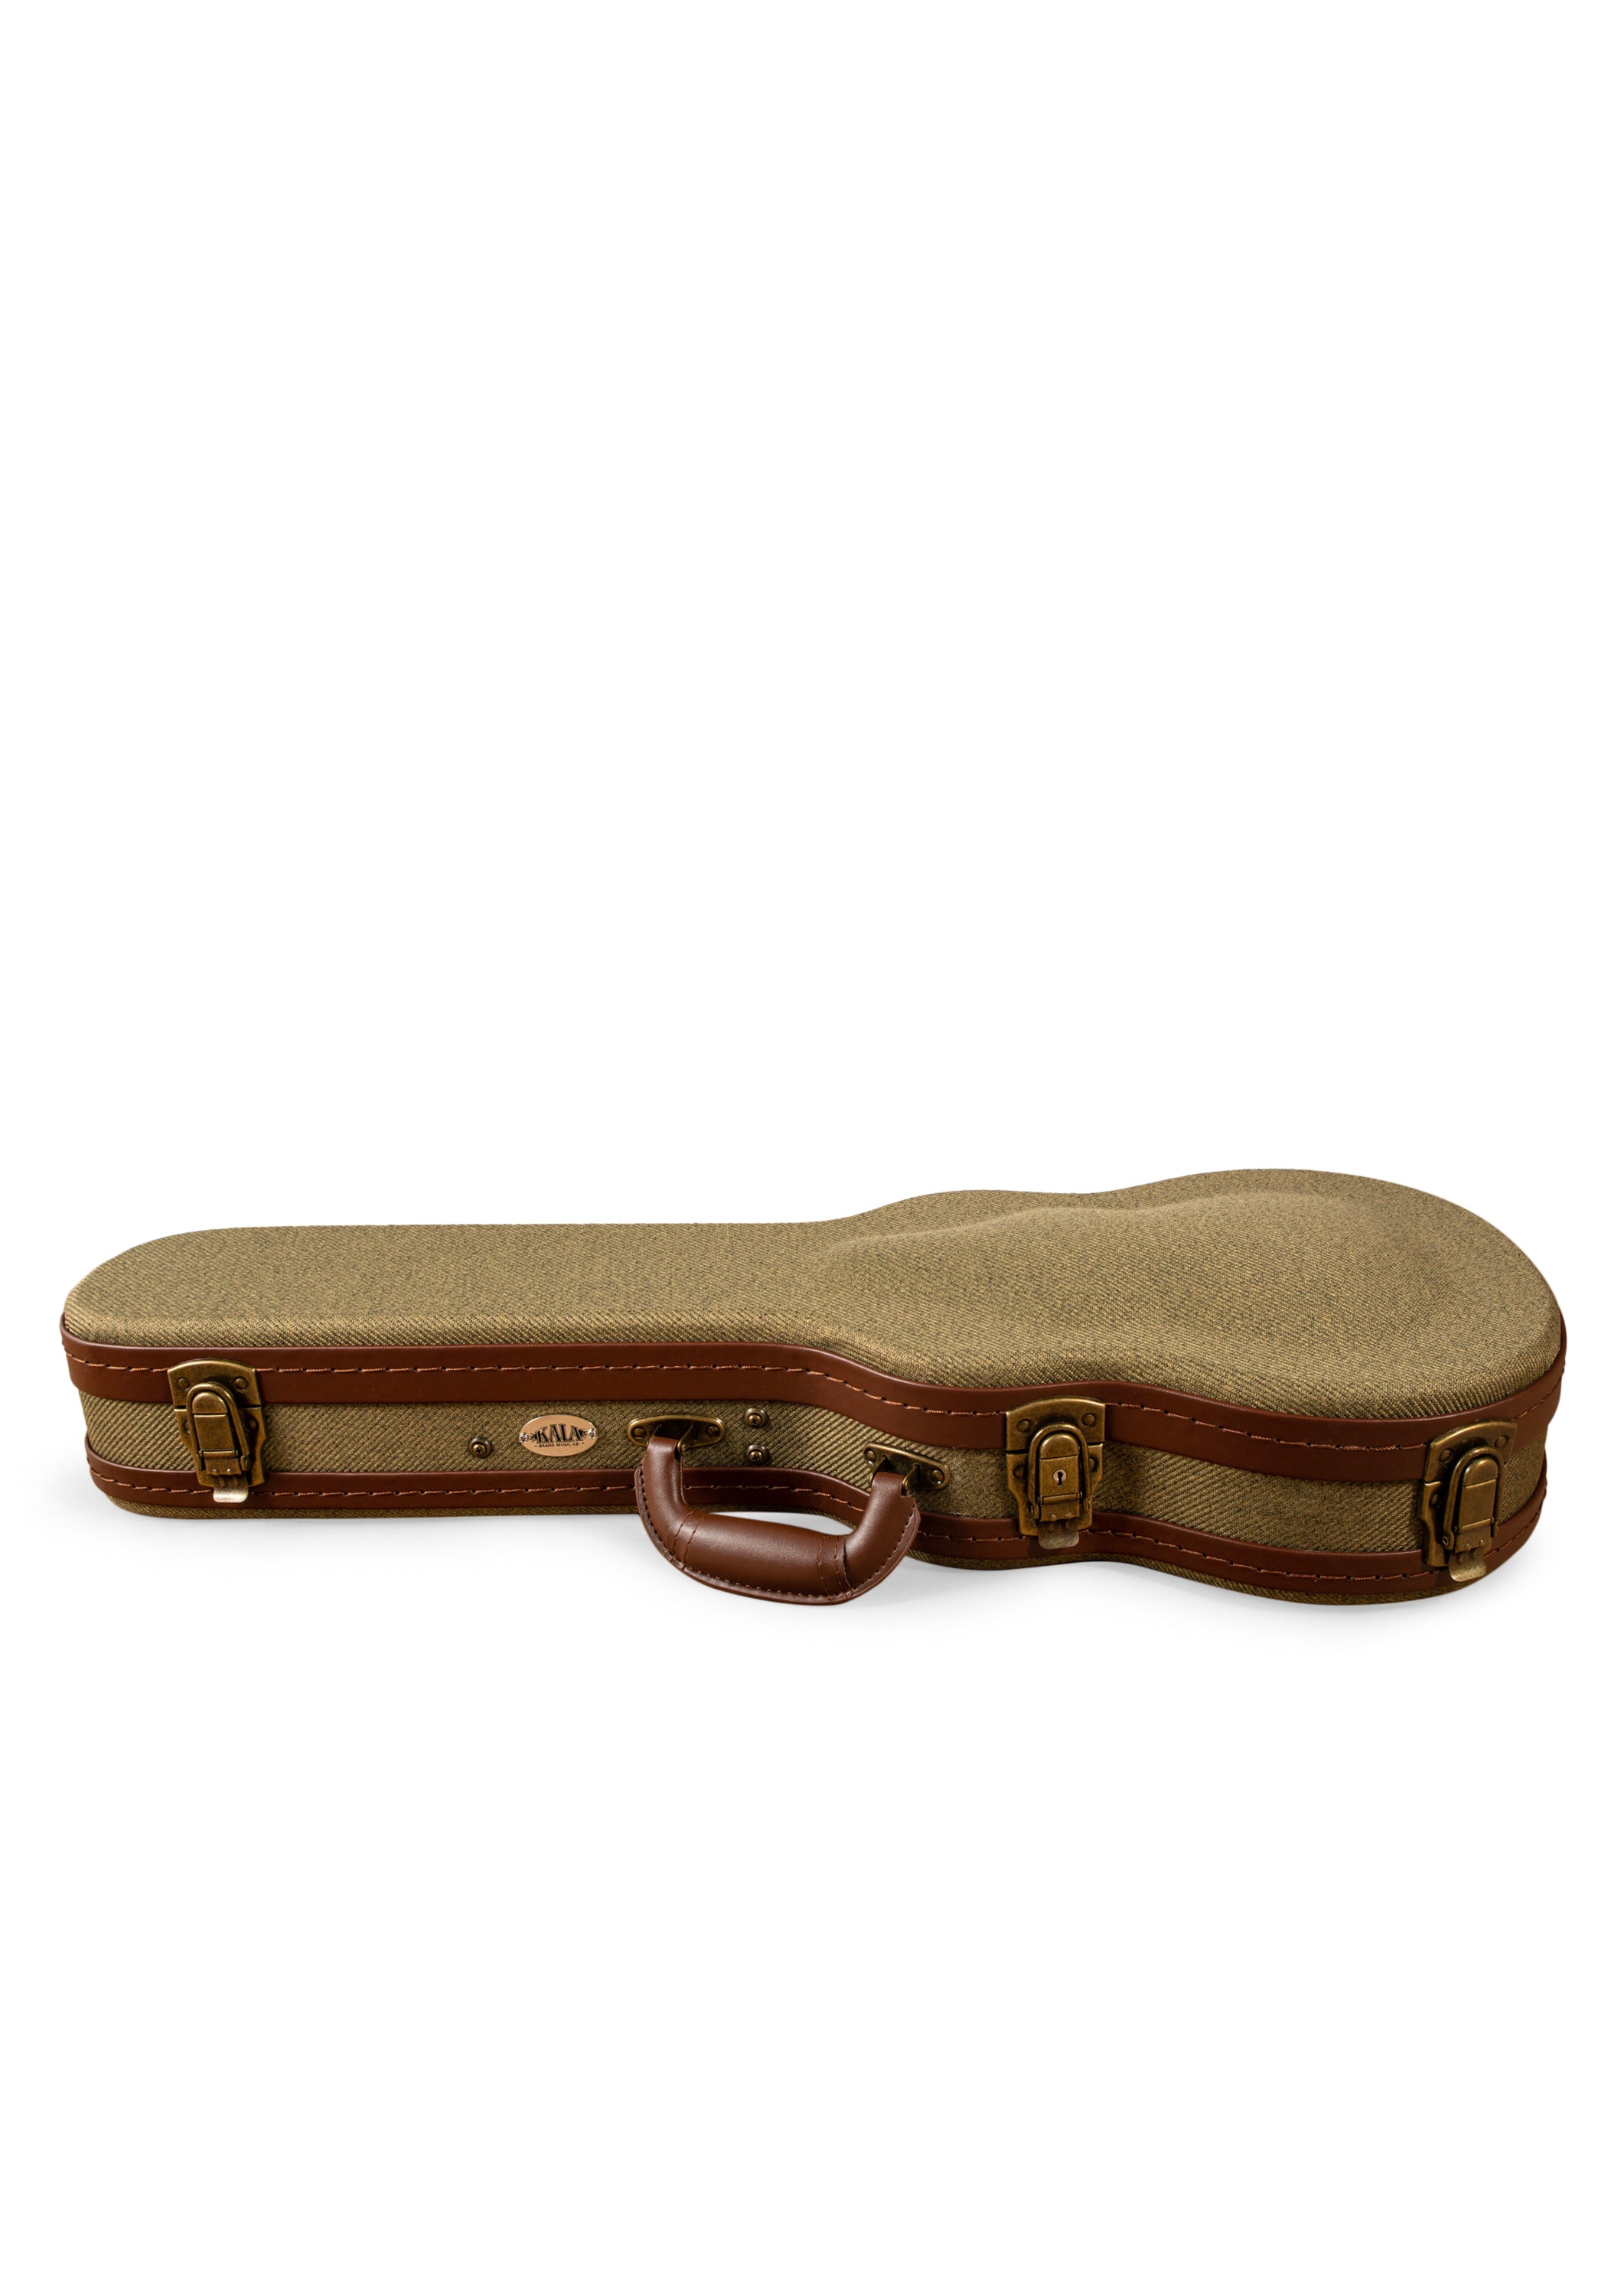 Kala OTT-AT Tenor Ukulele Olive Tweed Archtop Hardshell Case "Vincent" - Open Box